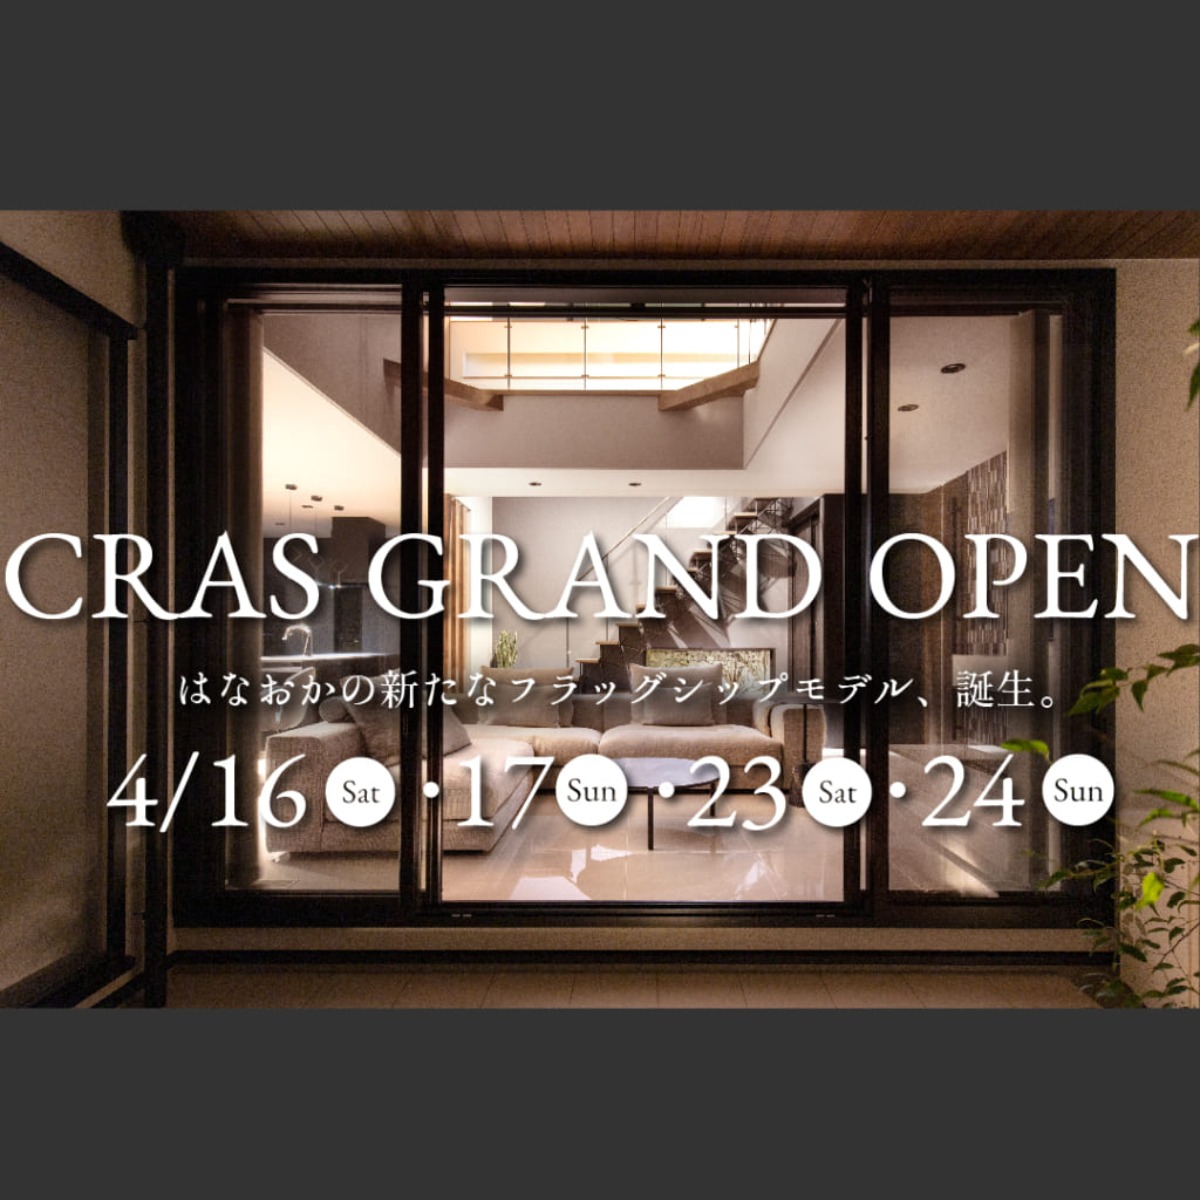 今の時代を反映させた、先進的かつ豊かなモデルハウスが徳島に登場！［CRAS（クラス）］はなおか